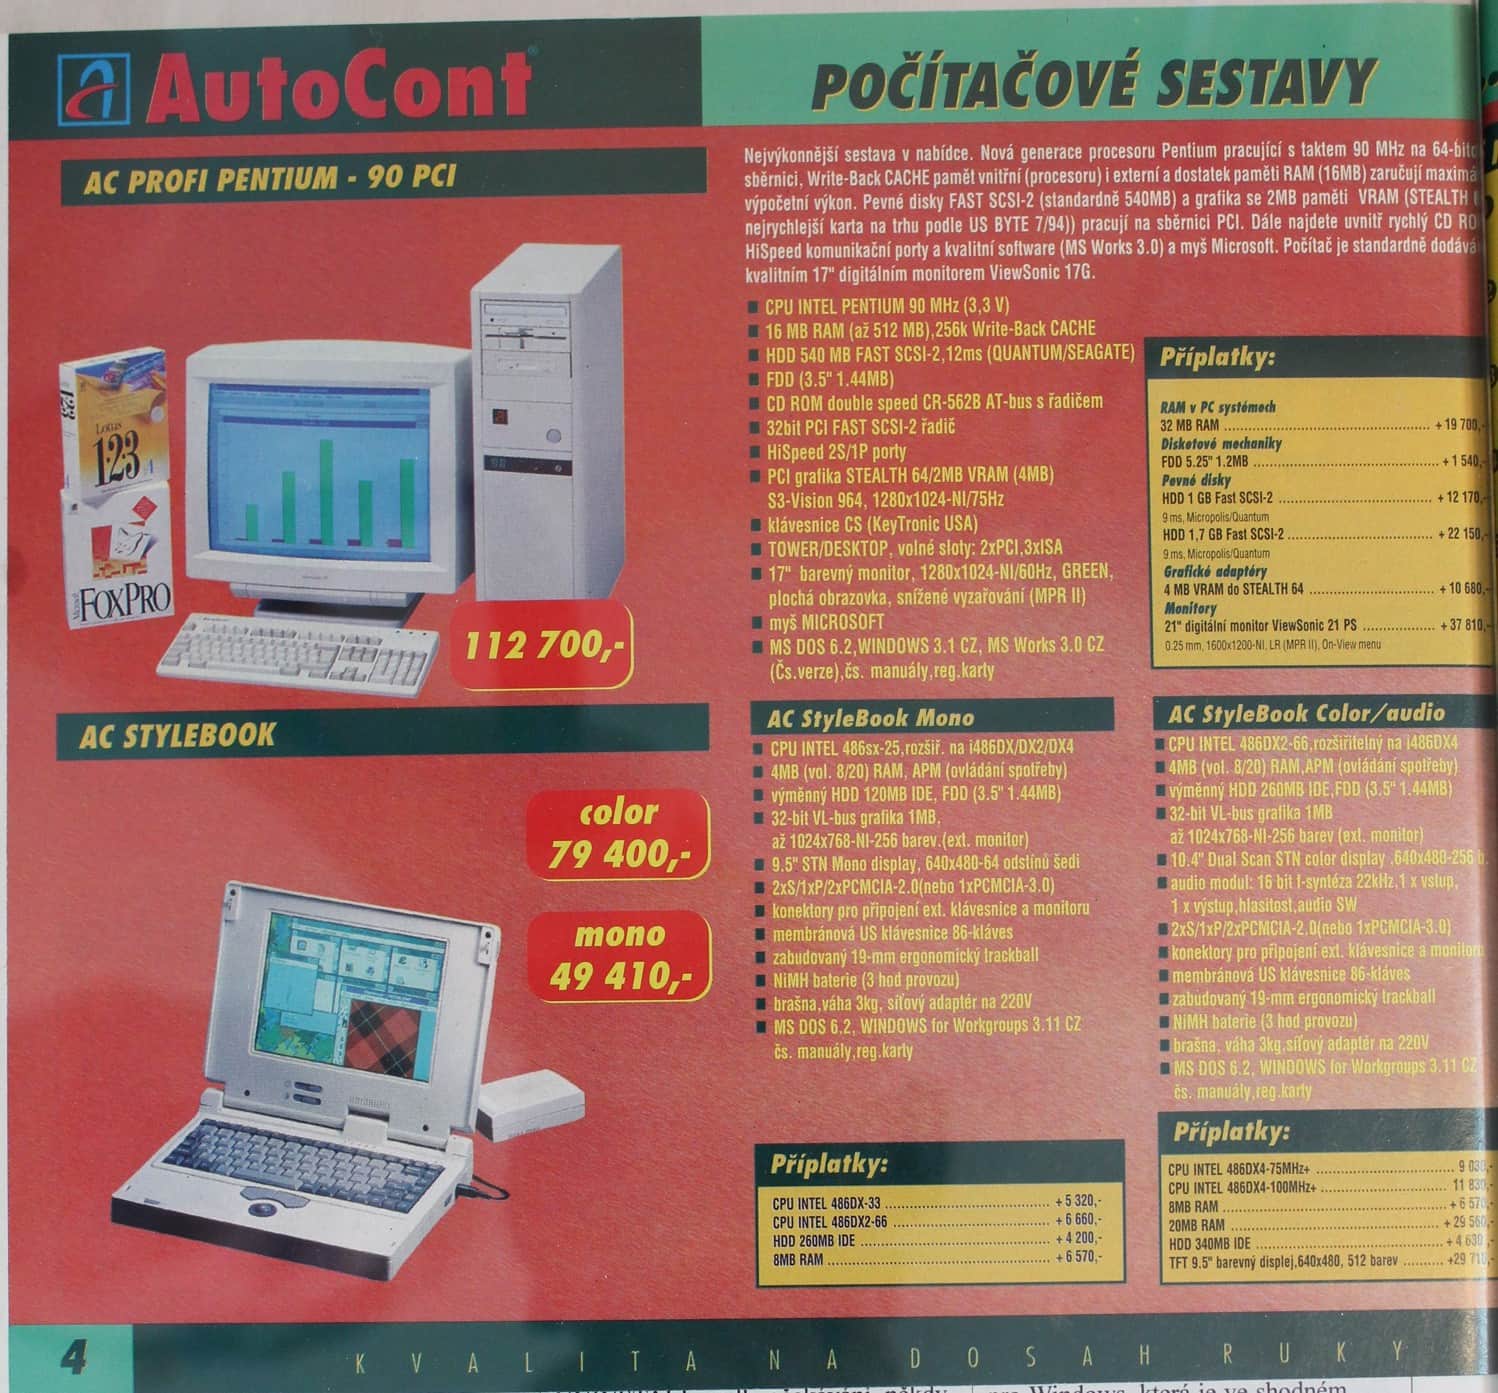 Autocont - katalog záři 94